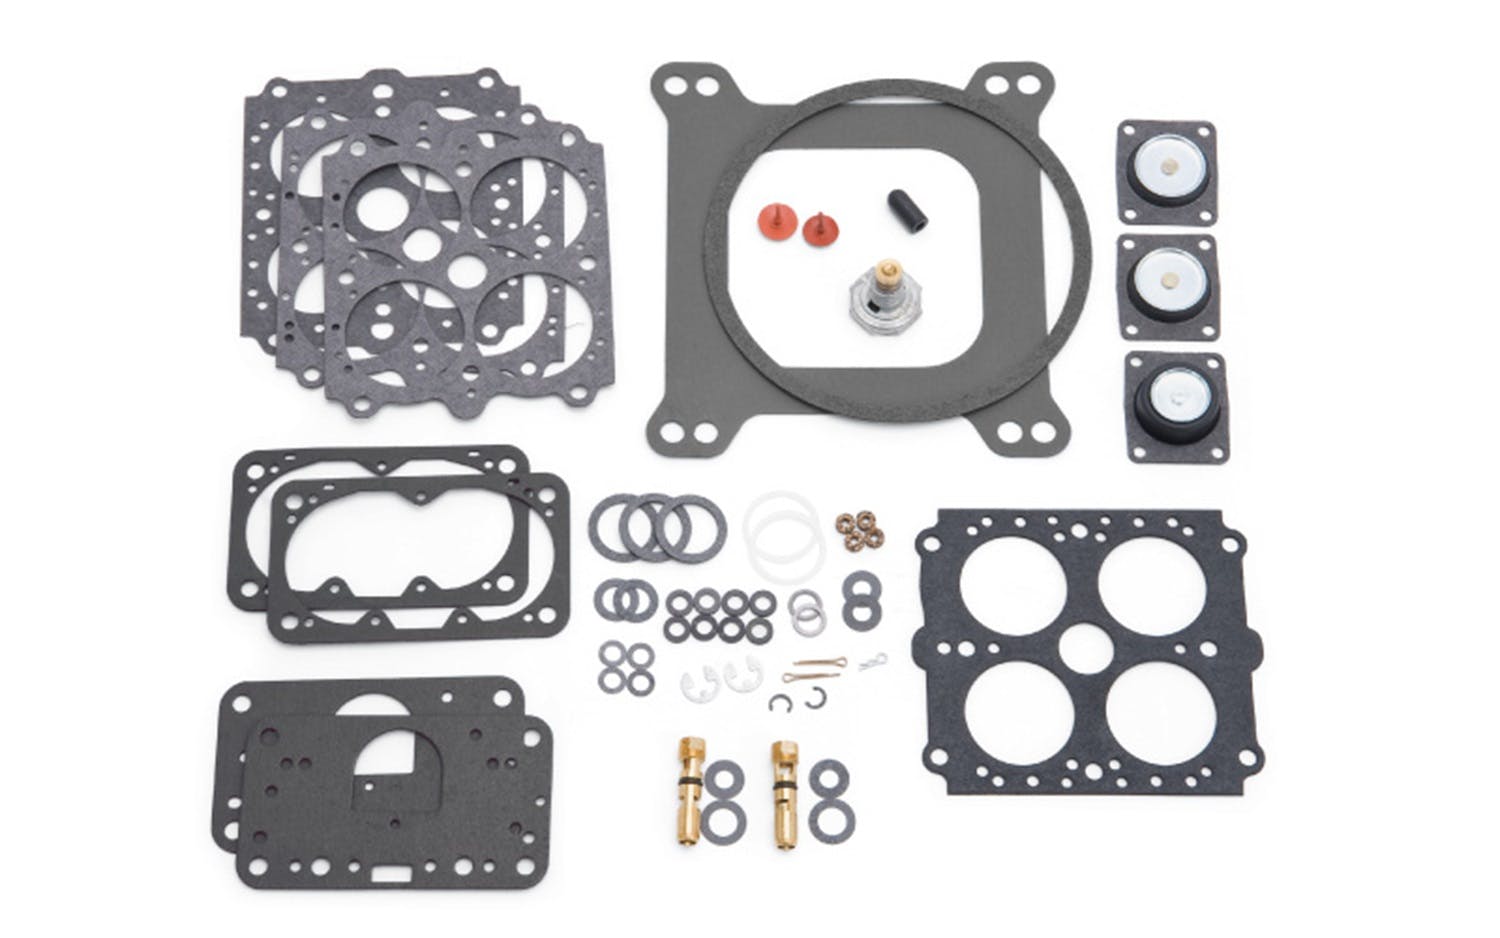 Edelbrock 12760 Rebuild and Maintenance Kit for Most 4150-Style Carburetors